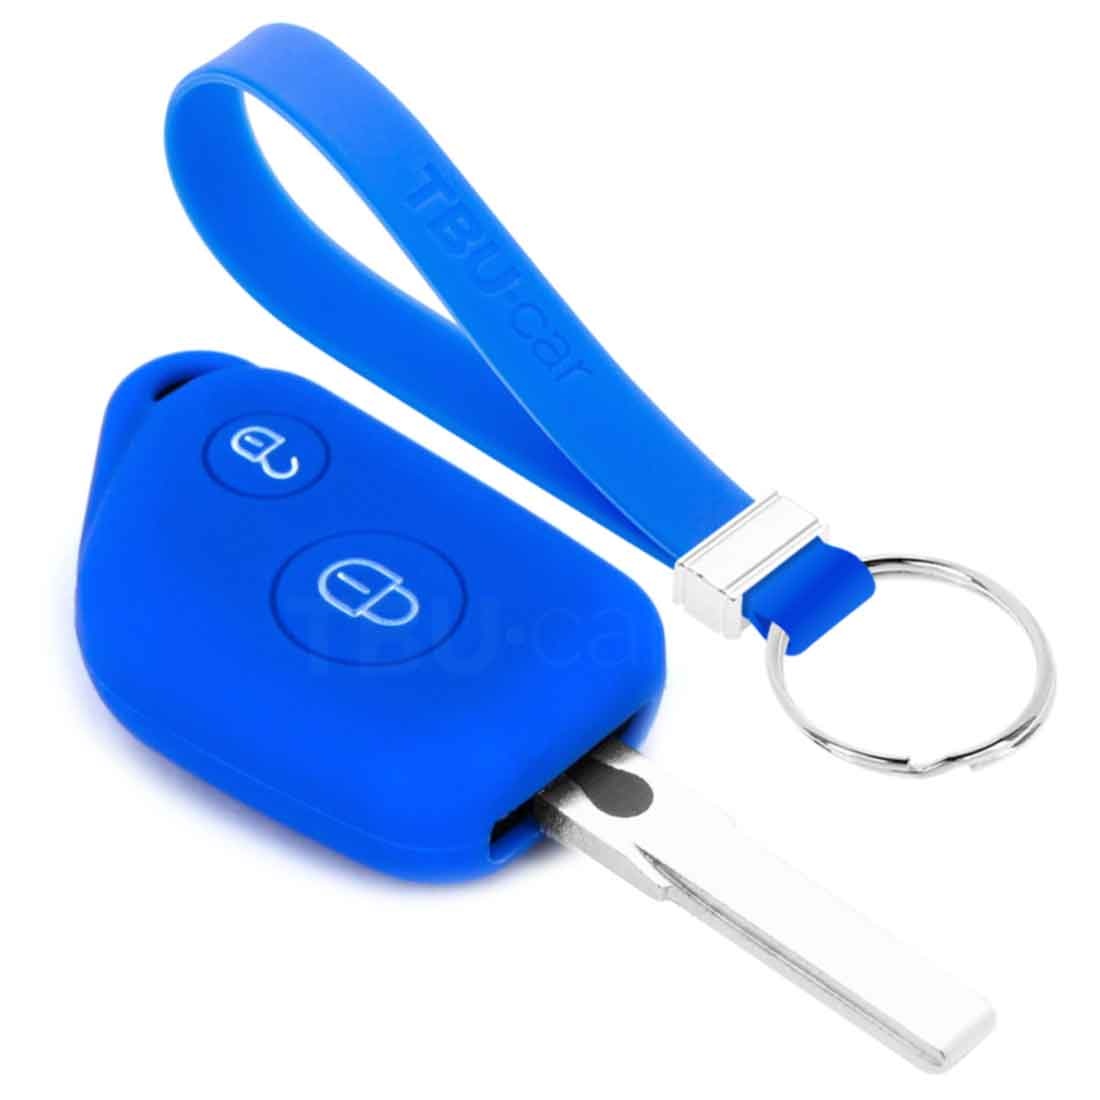 Auto Schlüssel Silikon Schutz Hülle Blau